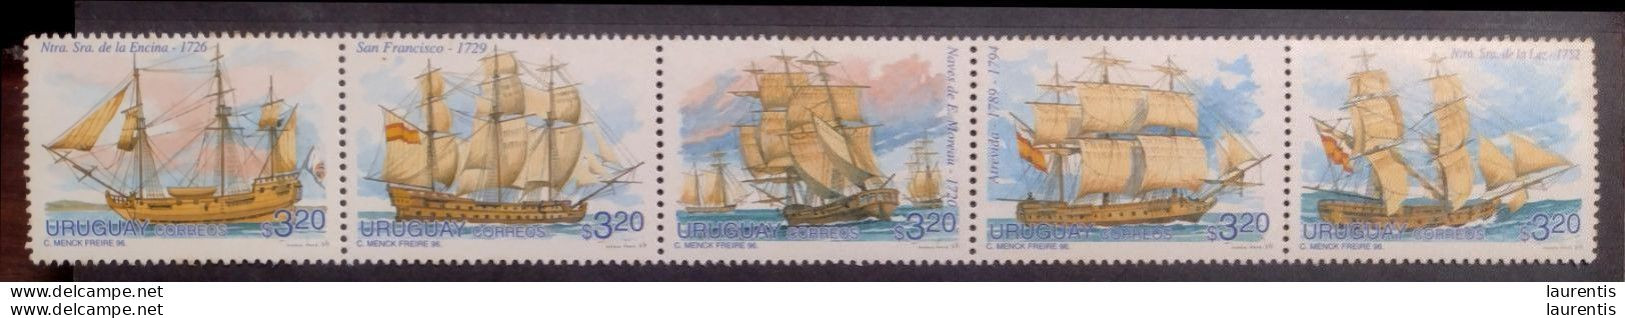 D2785  Ships - Voiliers - Uruguay 1996 MNH - 5,50 .jpg - Bateaux